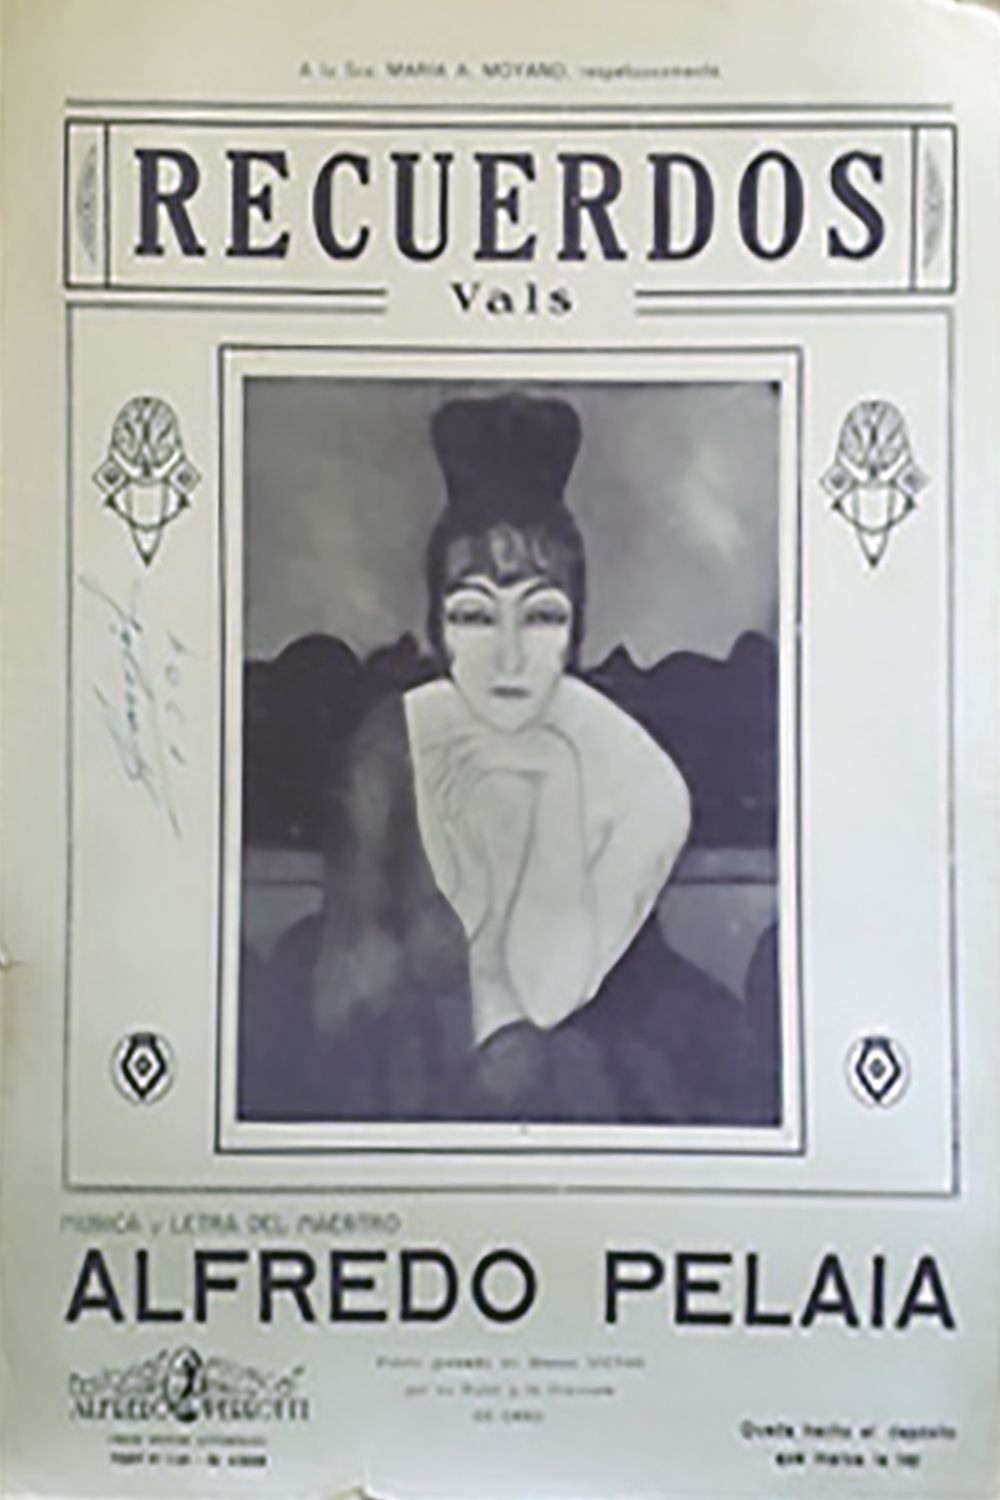 "Recuerdos", Argentine Tango vals music sheet cover.